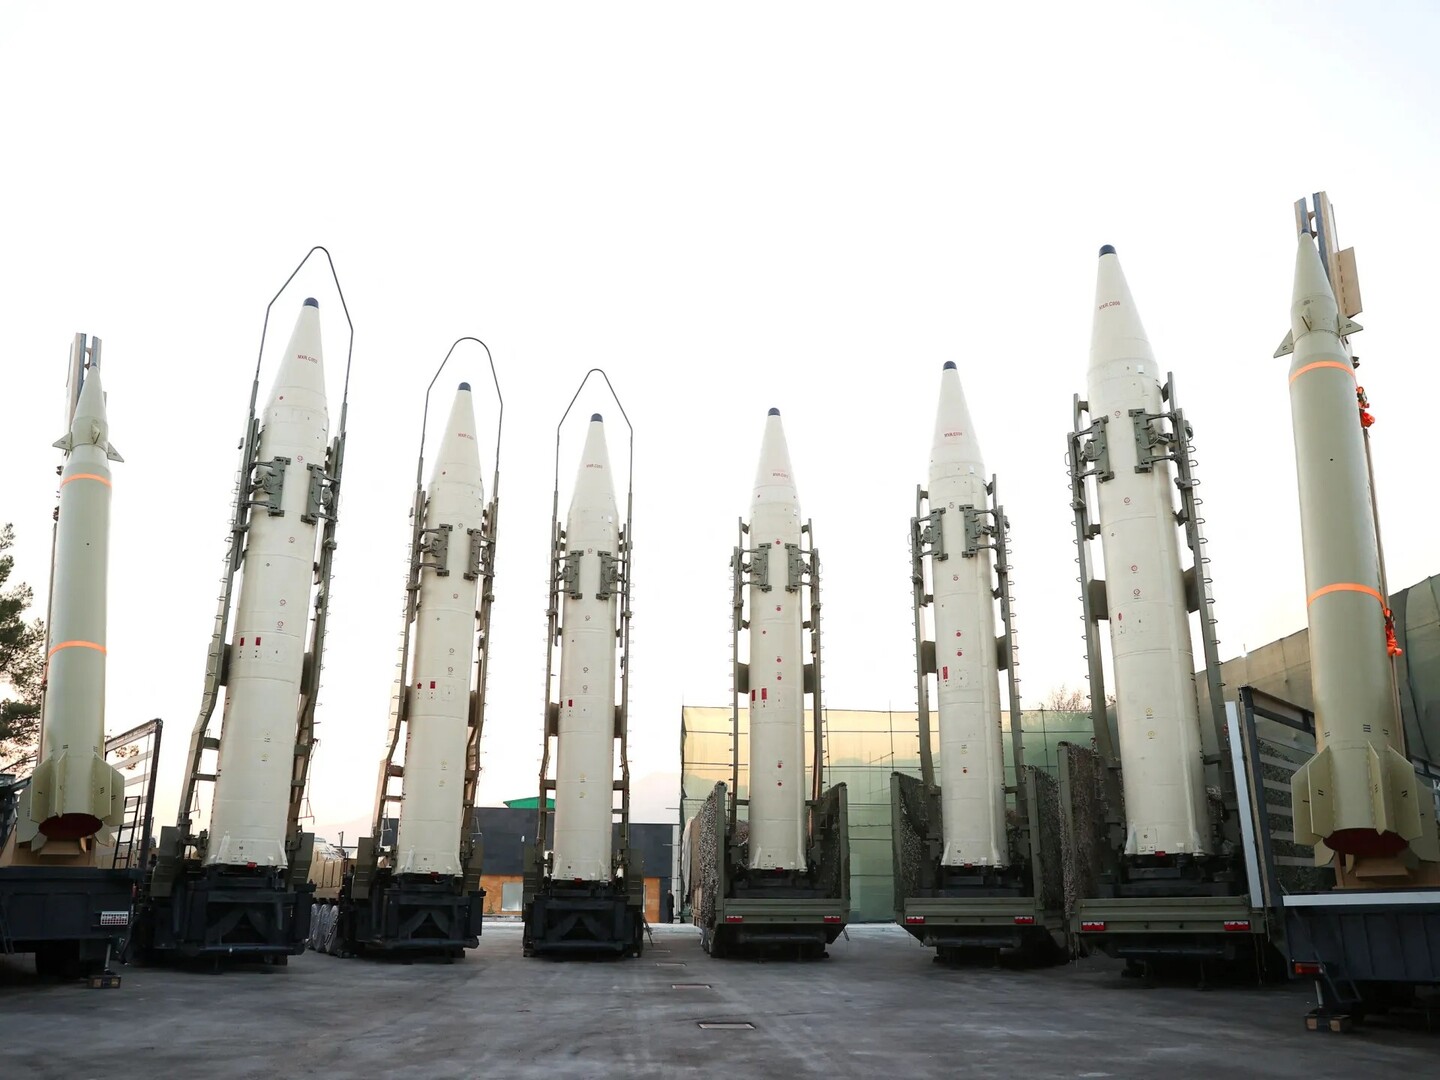 صواريخ إيرانية